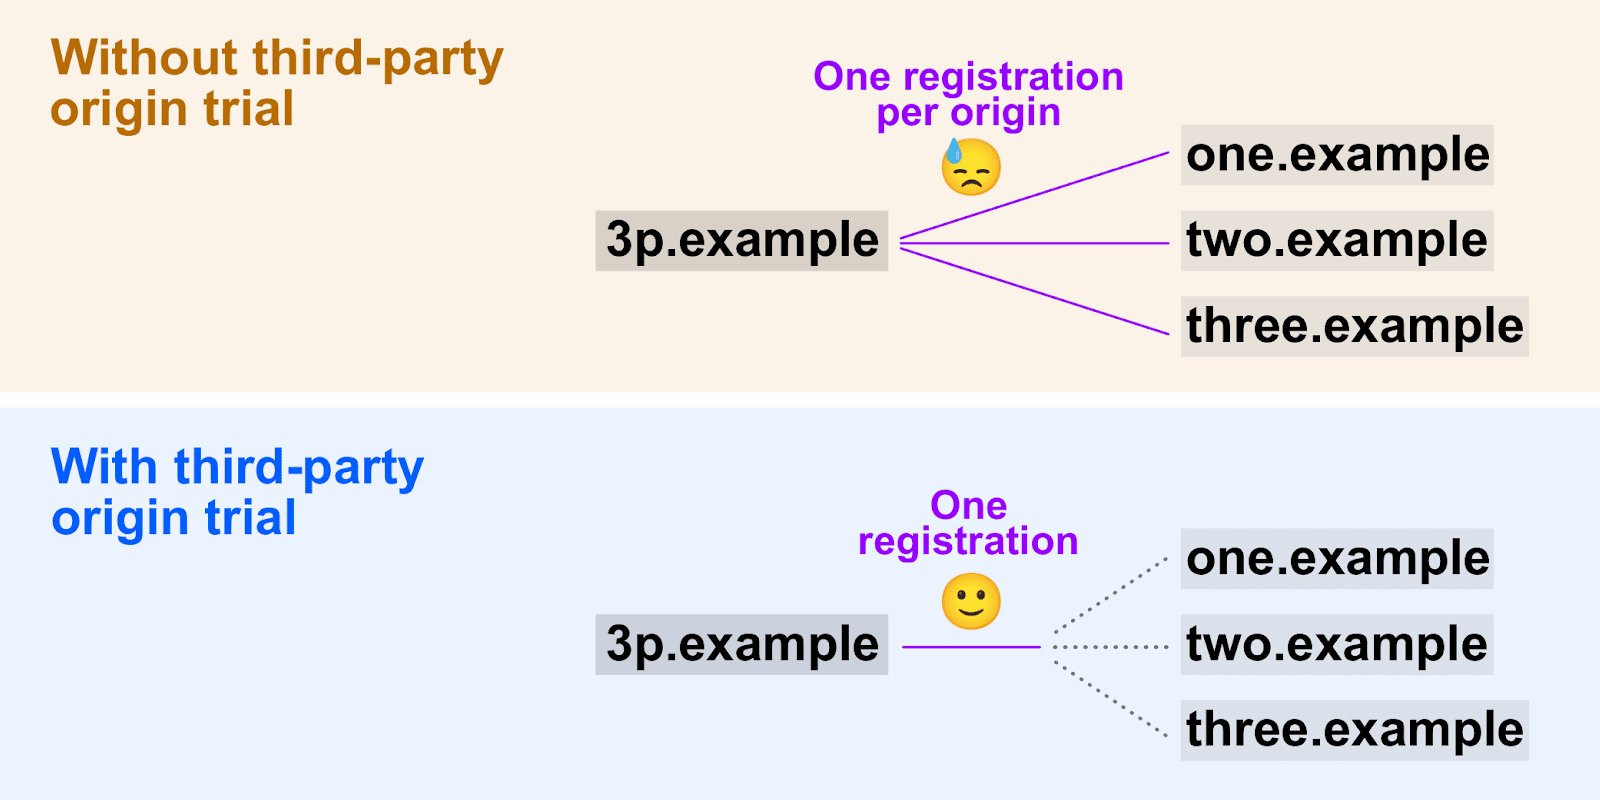 رسم بياني يوضّح
   كيف تتيح تجارب المصادر التابعة لجهات خارجية استخدام رمز مميّز واحد للتسجيل في مصادر متعددة.